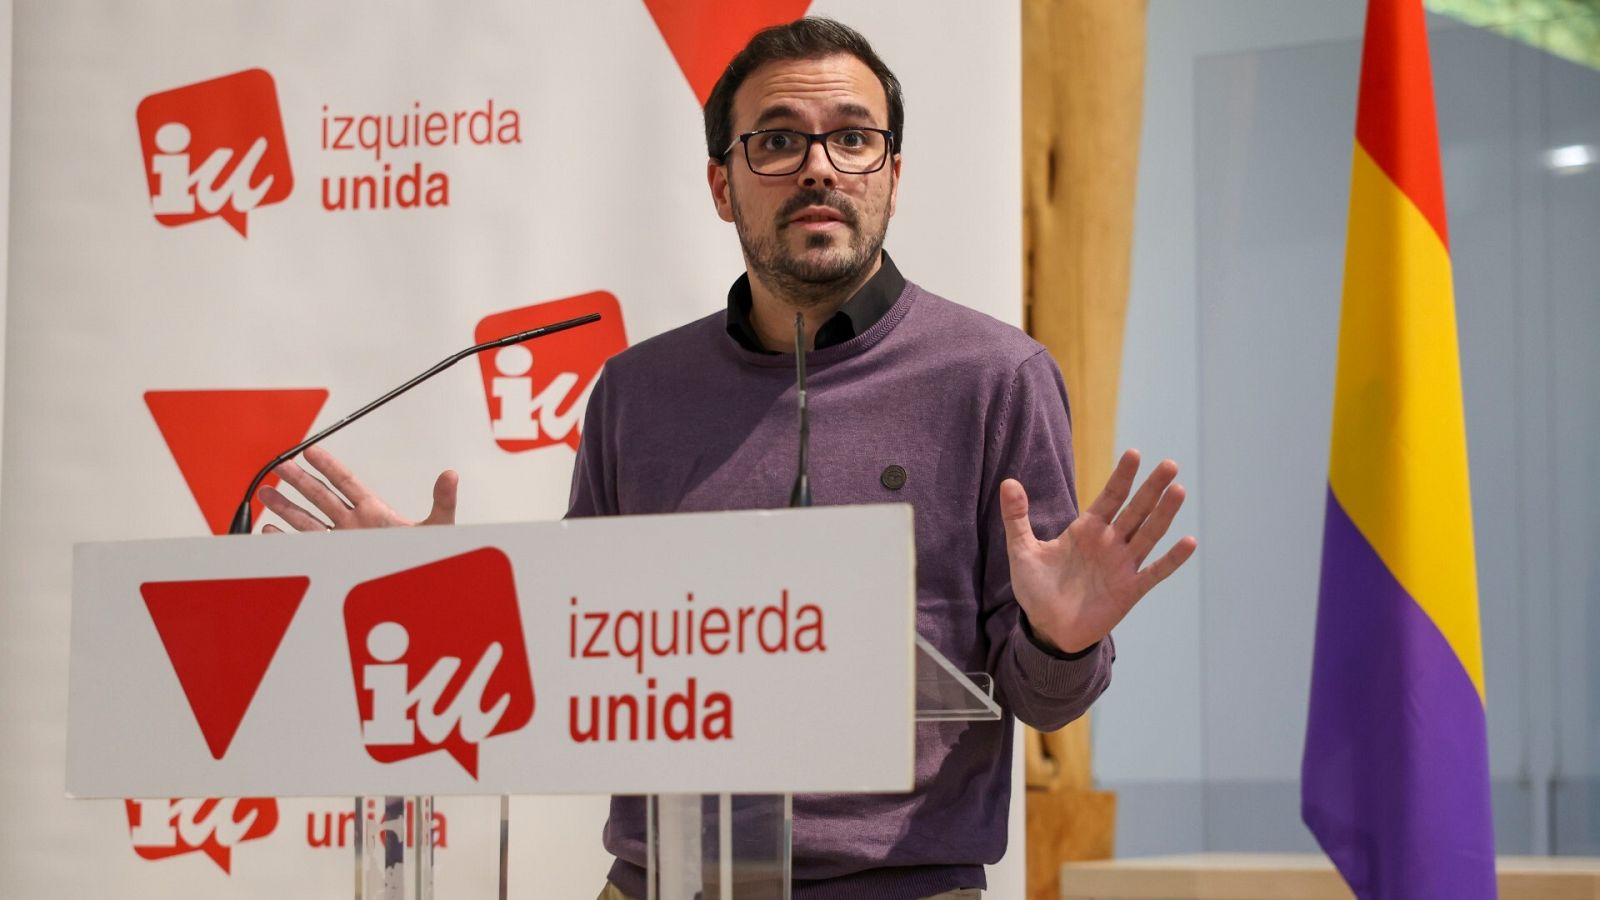 El coordinador de IU, Alberto Garzón, se despide formalmente de su cargo